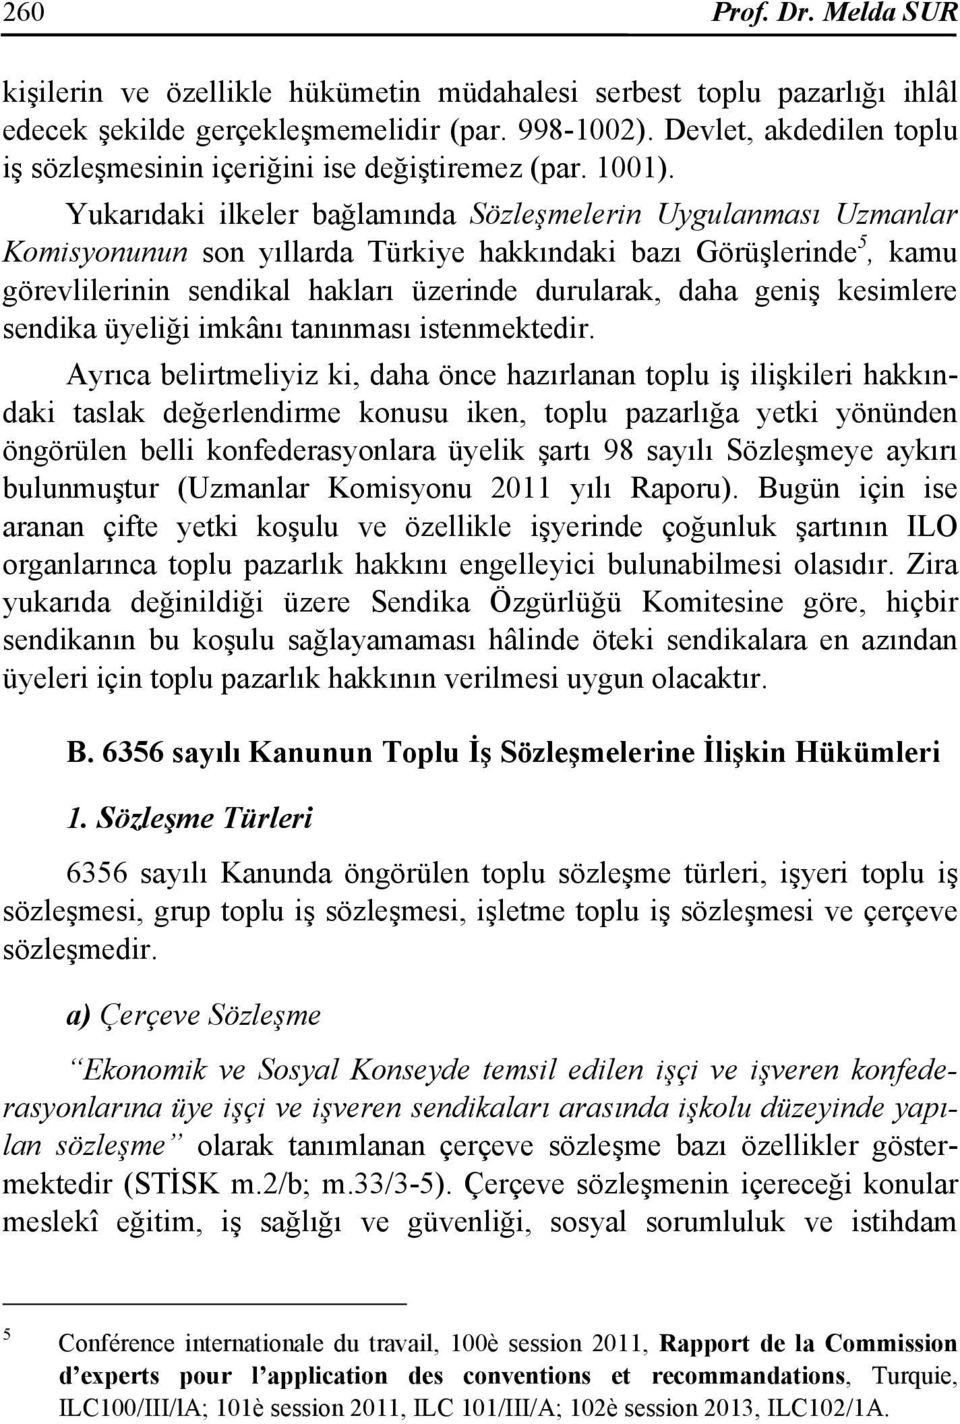 Yukarıdaki ilkeler bağlamında Sözleşmelerin Uygulanması Uzmanlar Komisyonunun son yıllarda Türkiye hakkındaki bazı Görüşlerinde 5, kamu görevlilerinin sendikal hakları üzerinde durularak, daha geniş